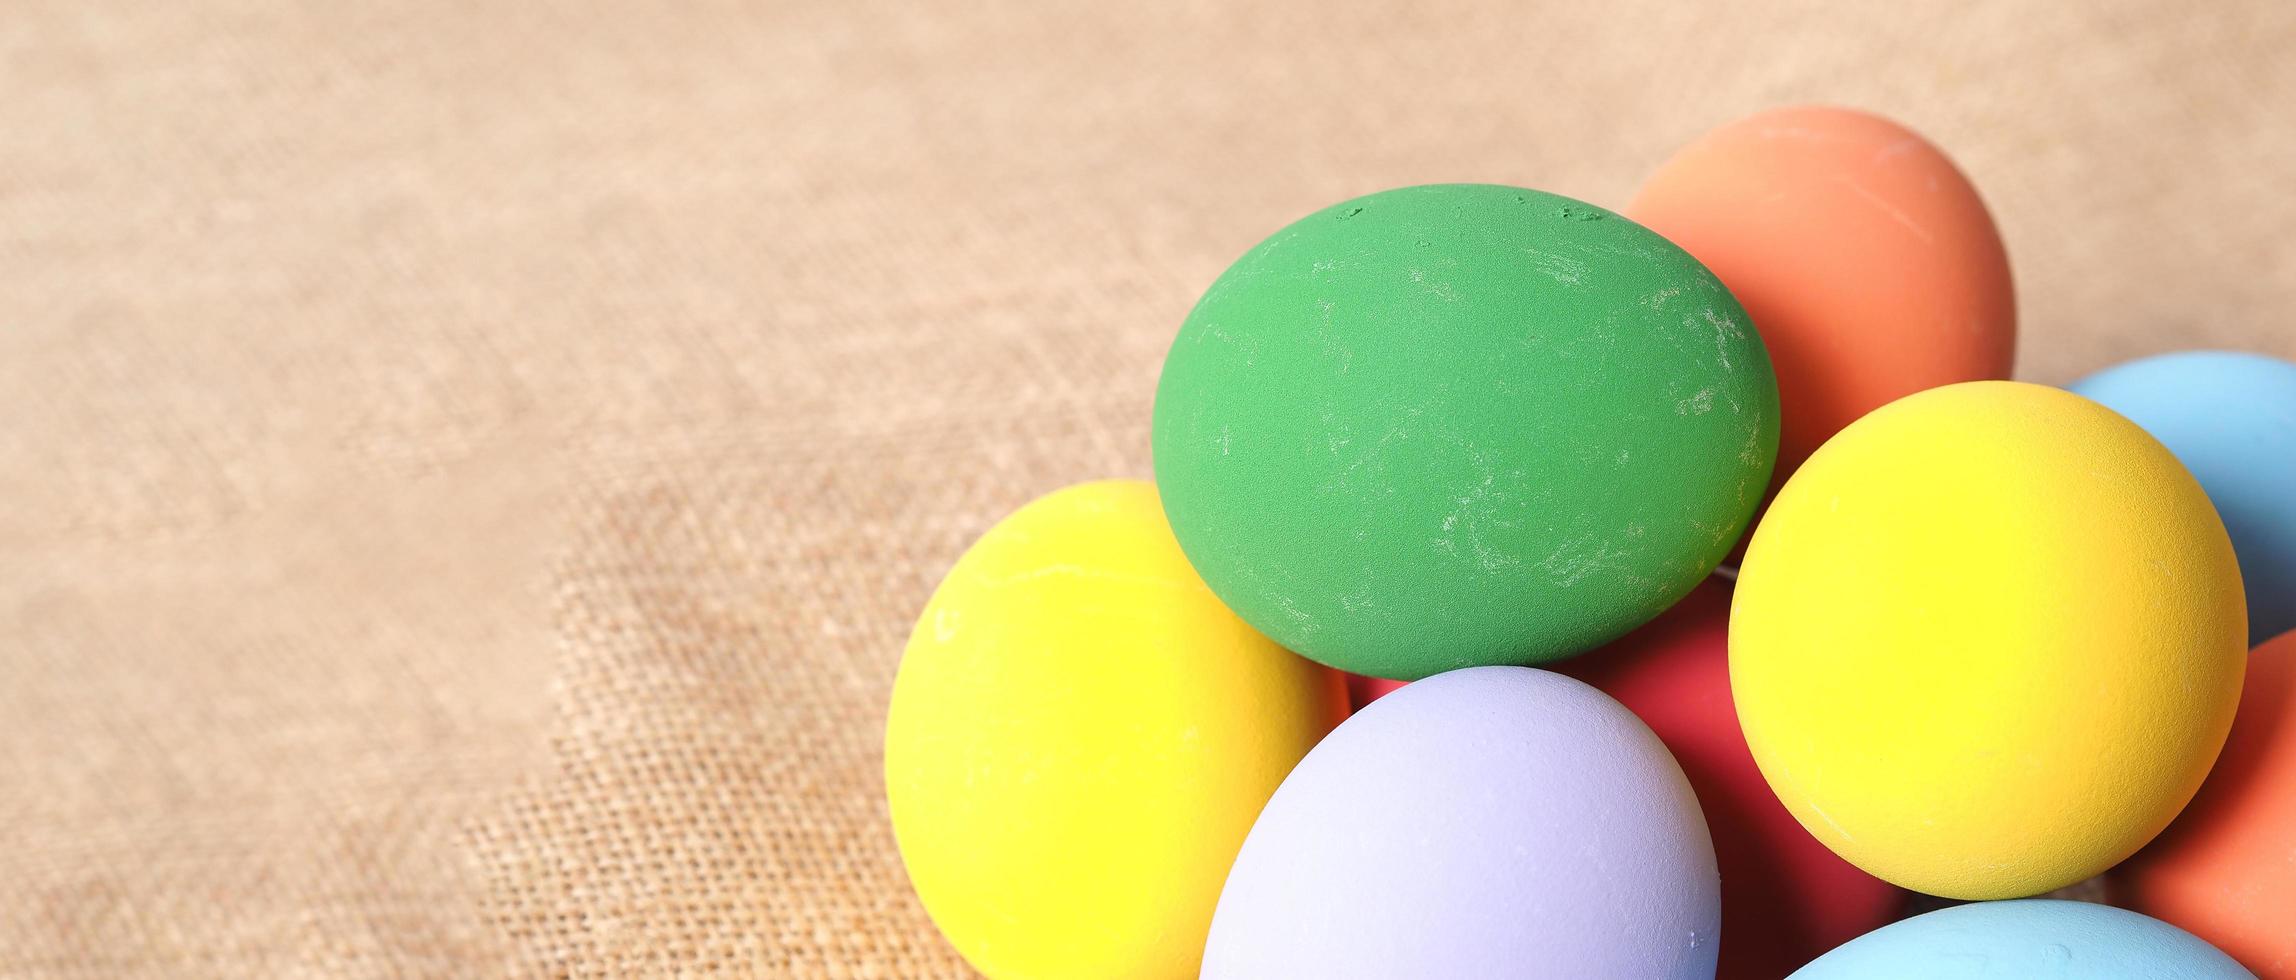 huevos de pascua o huevo de color. multicolor de huevos de pascua foto